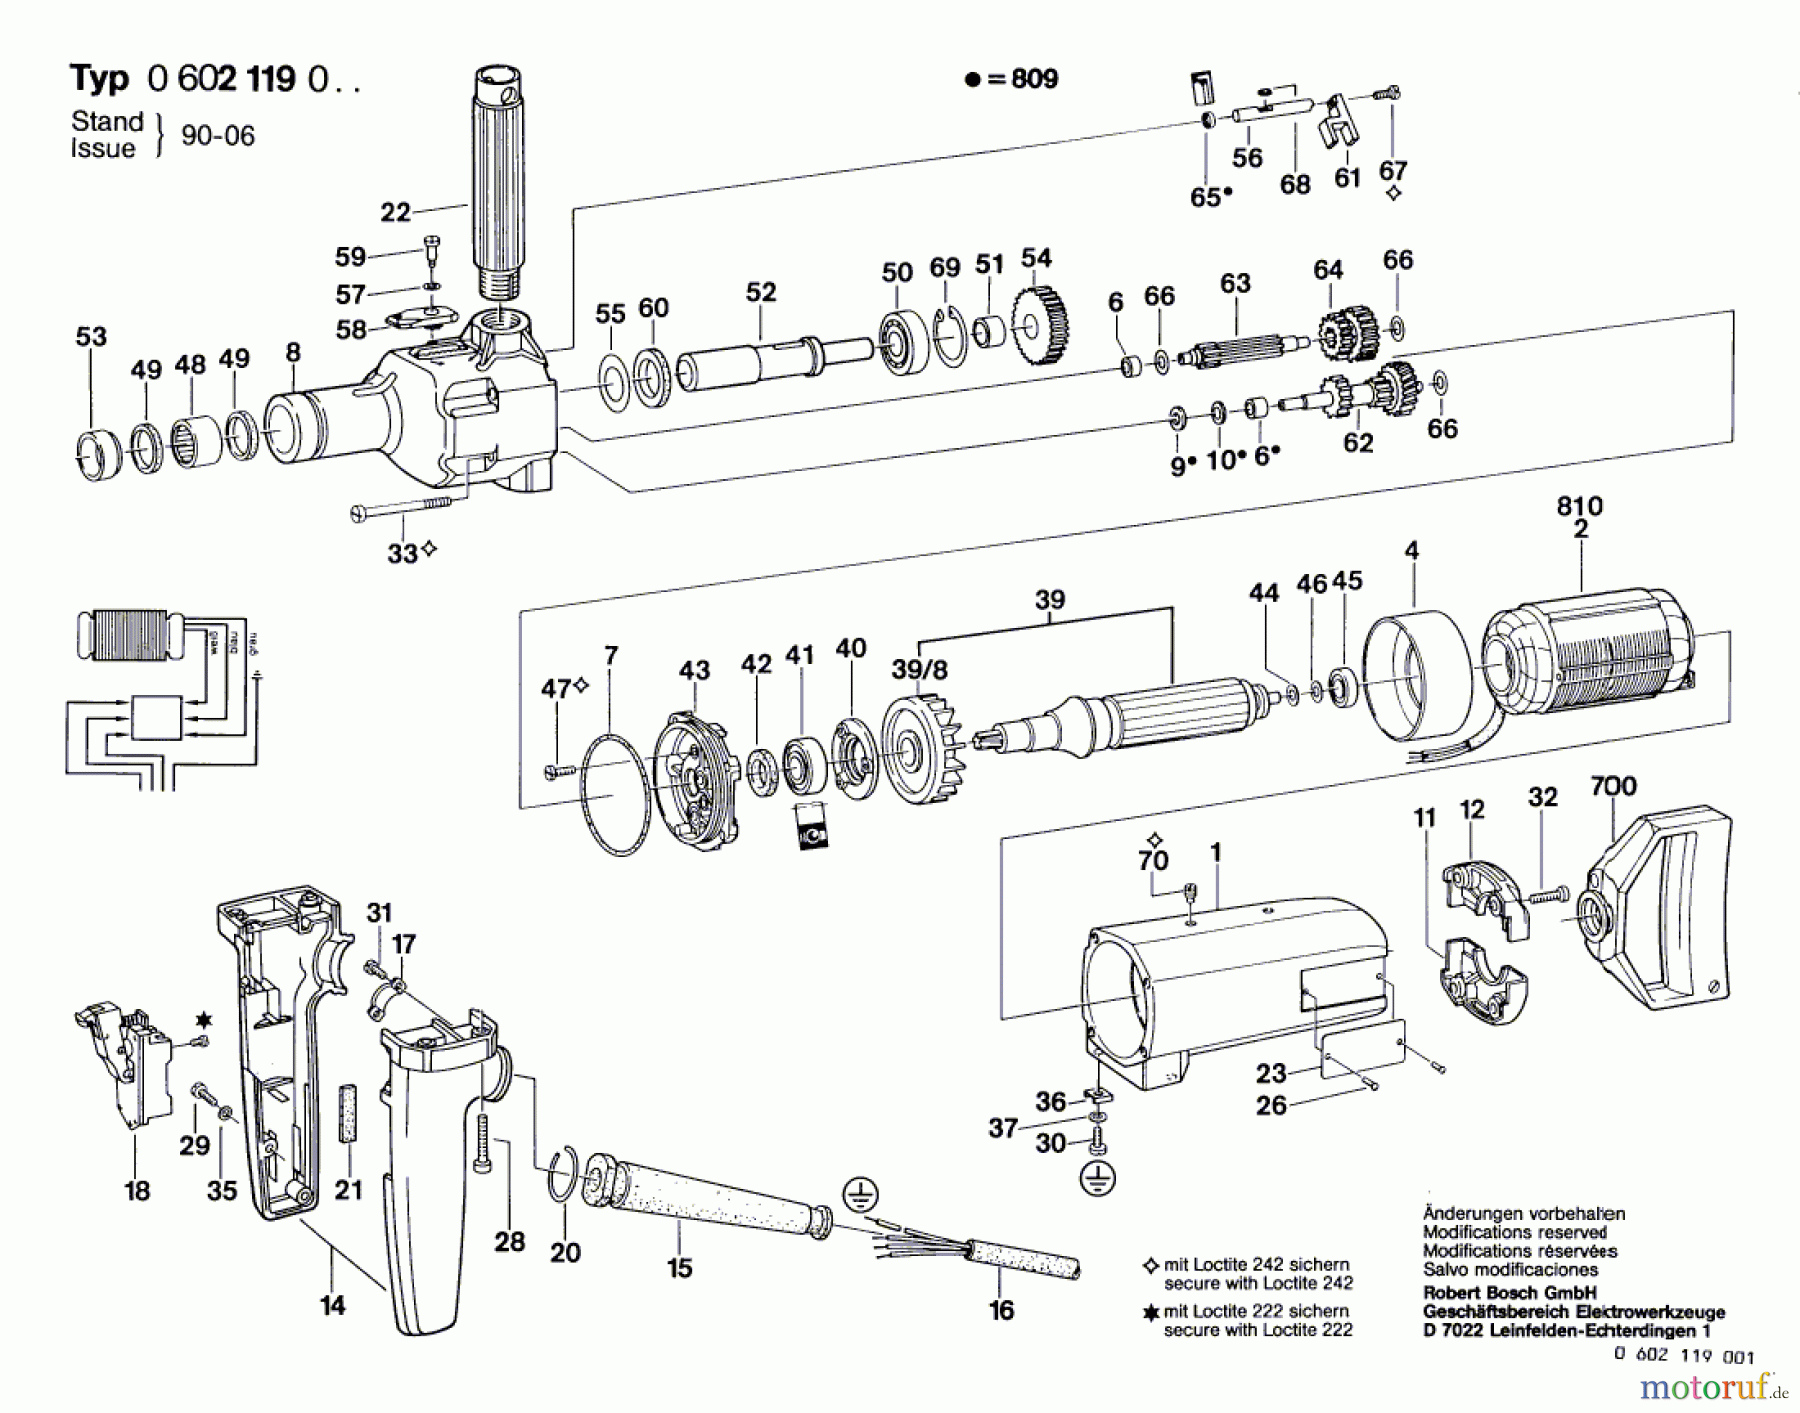  Bosch Werkzeug Bohrmaschine GR.77 Seite 1